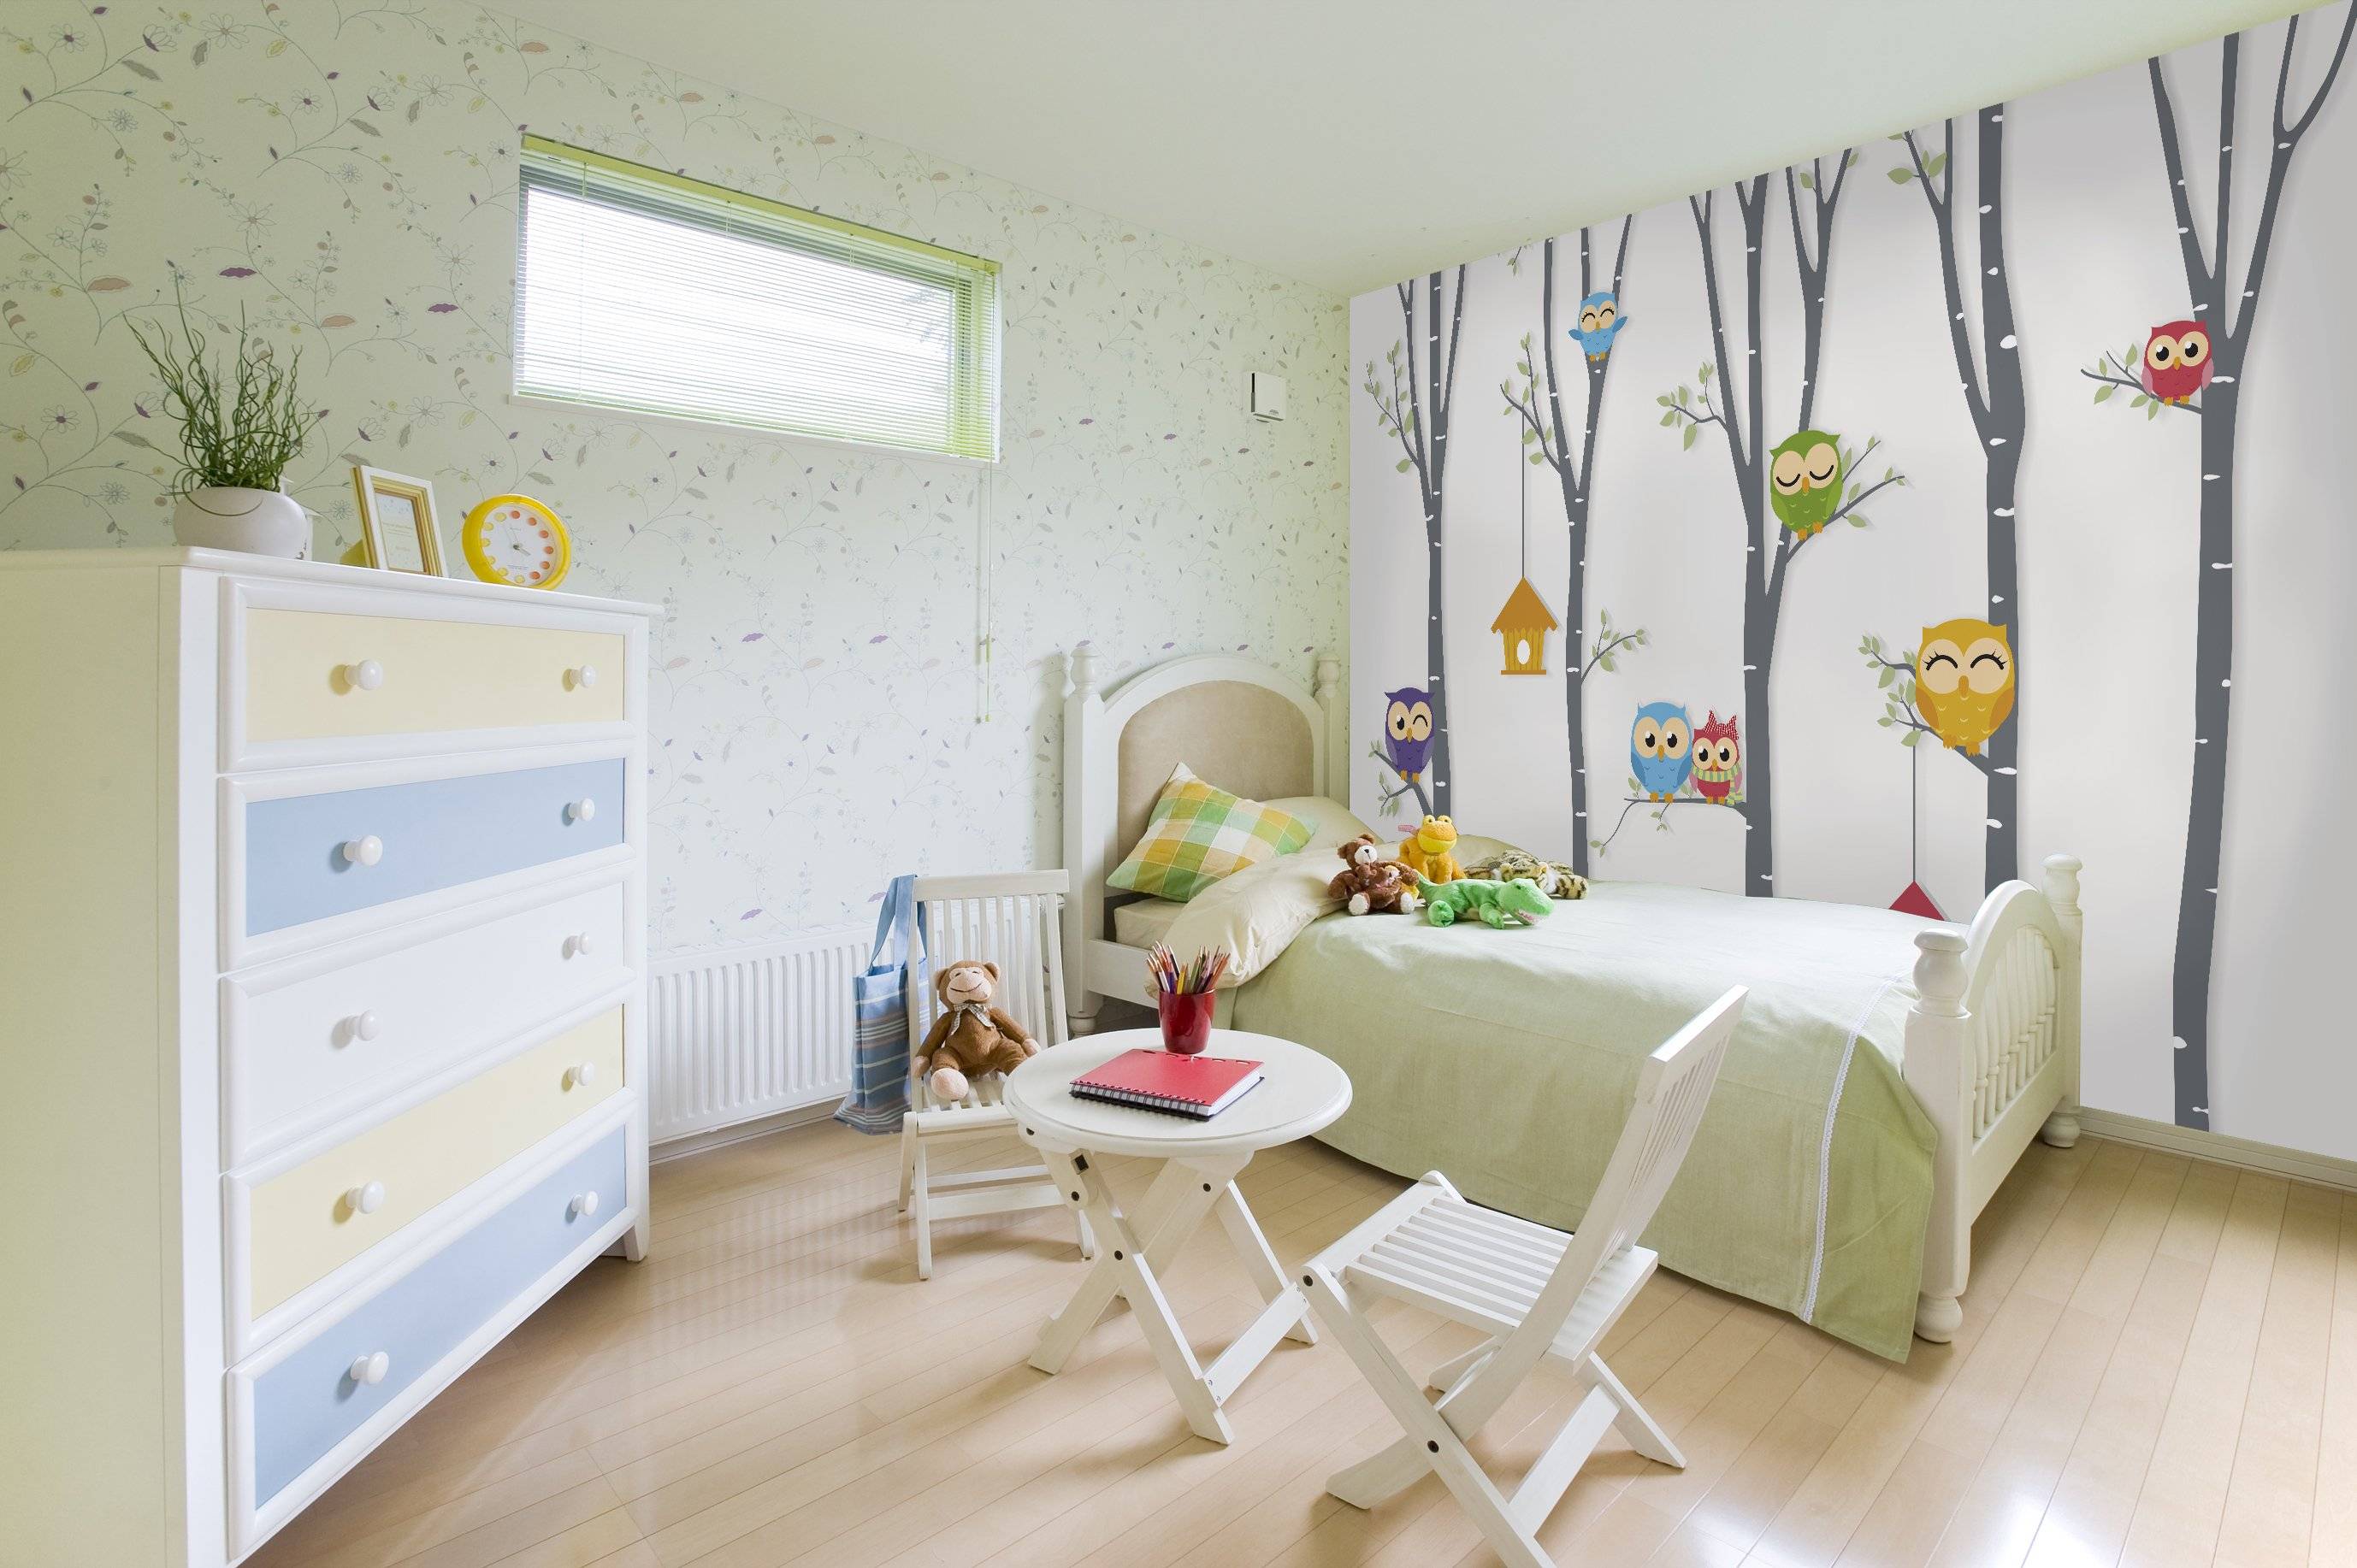 Фотообои для детской комнаты — идеи по выбору сюжета и советы по применению в дизайне интерьера